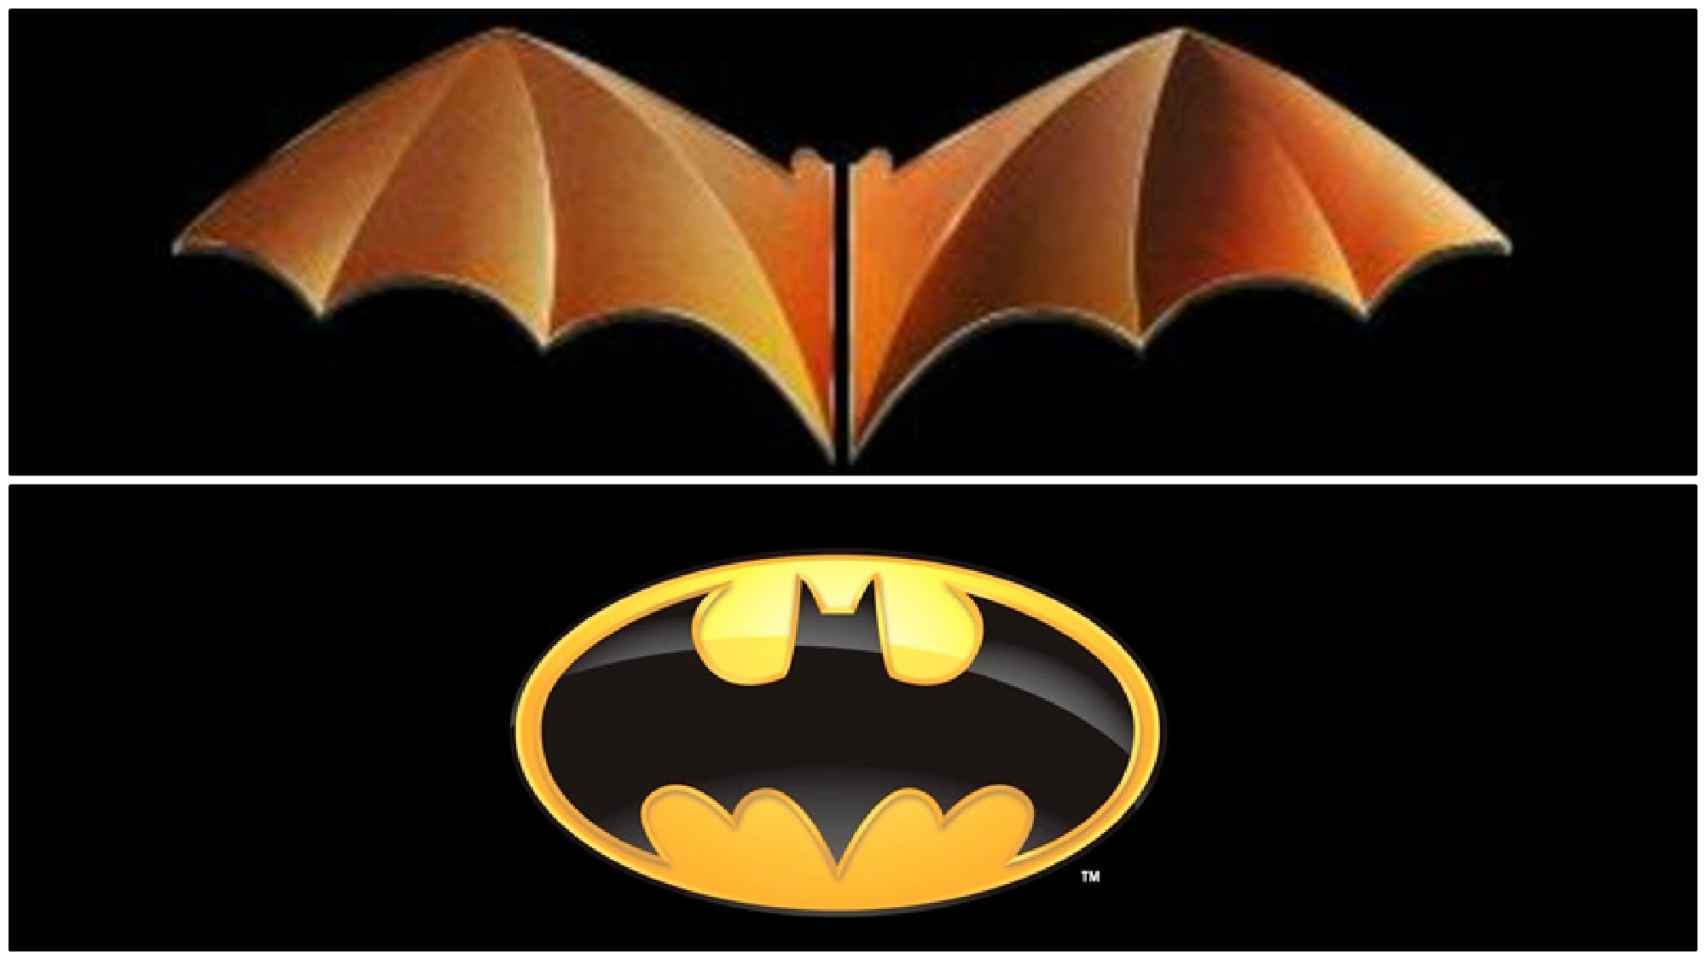 Batman no quiere ser del Valencia: DC Comics se opone al logo del centenario